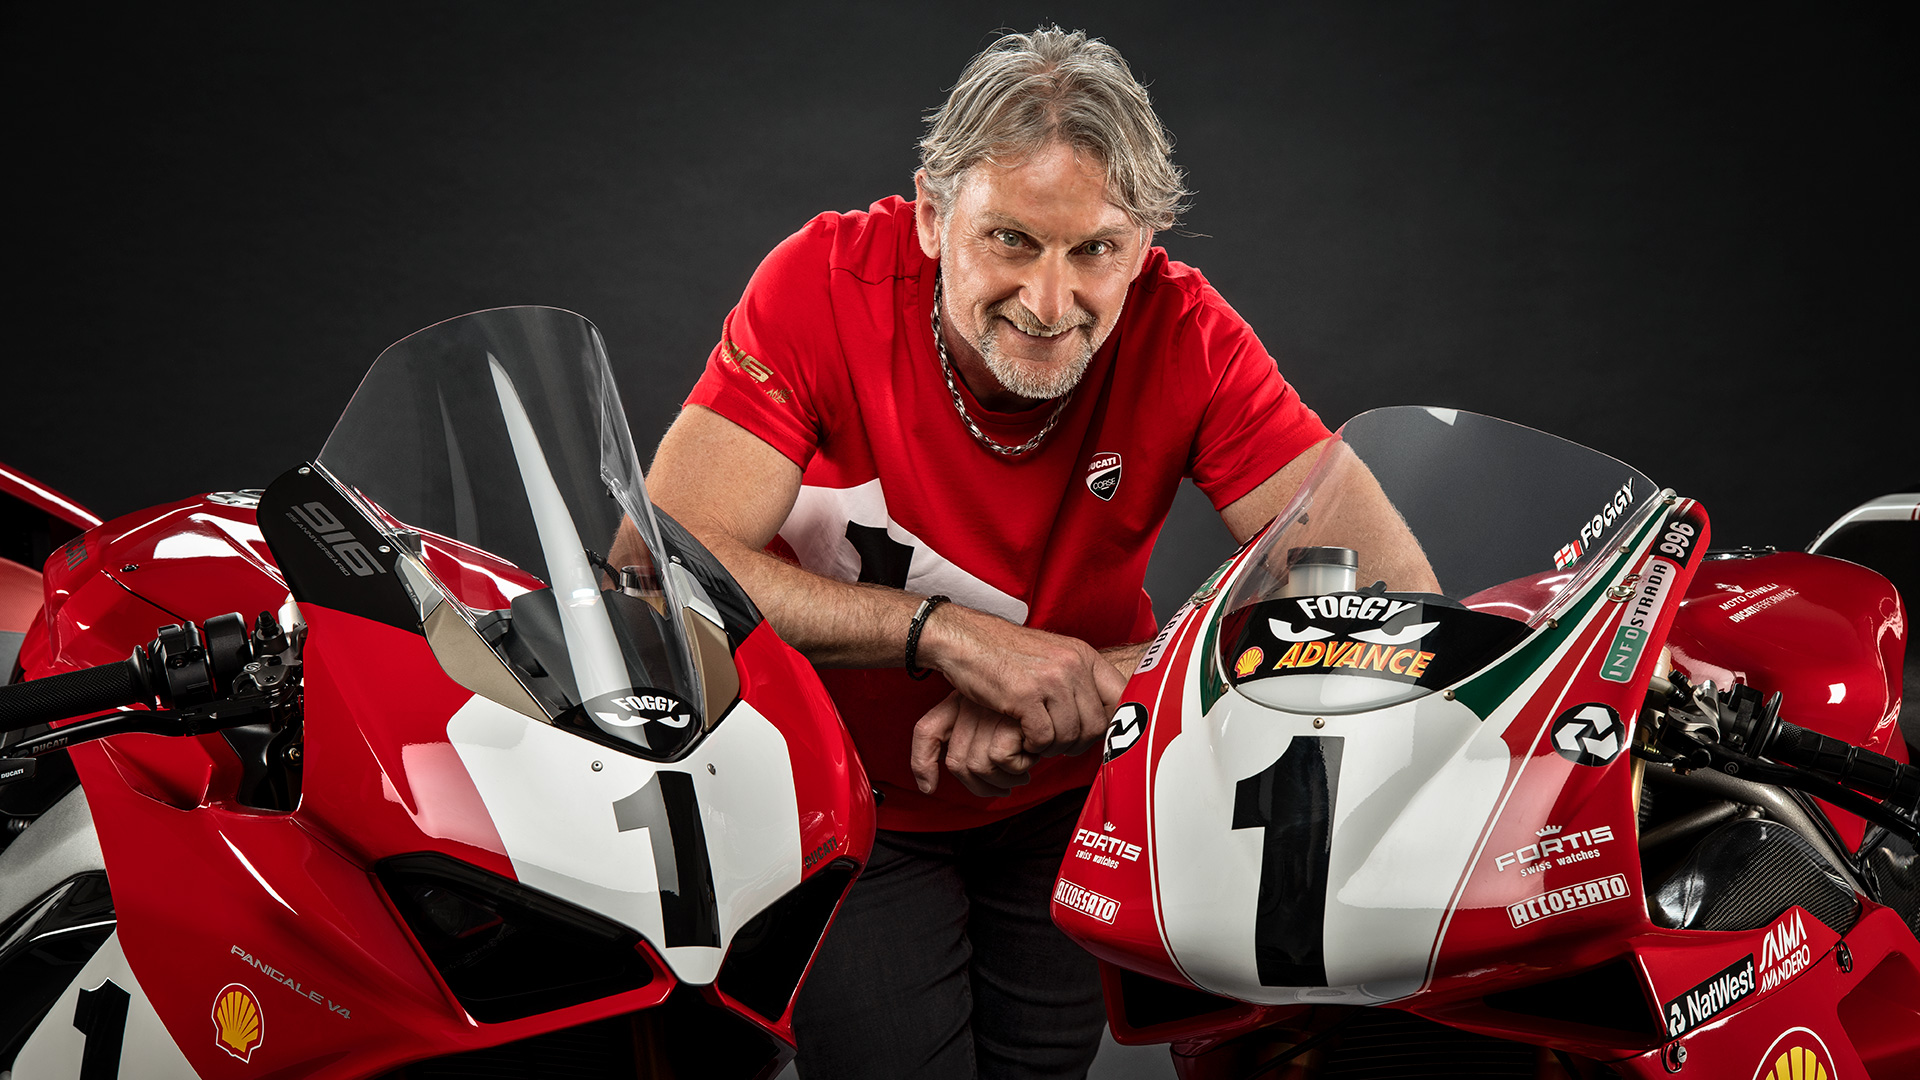 Siêu phẩm Panigale V4 kỷ niệm 25 năm của Ducati chính thức ra mắt, giá hơn 47,000 USD và chỉ bán 500 chiếc